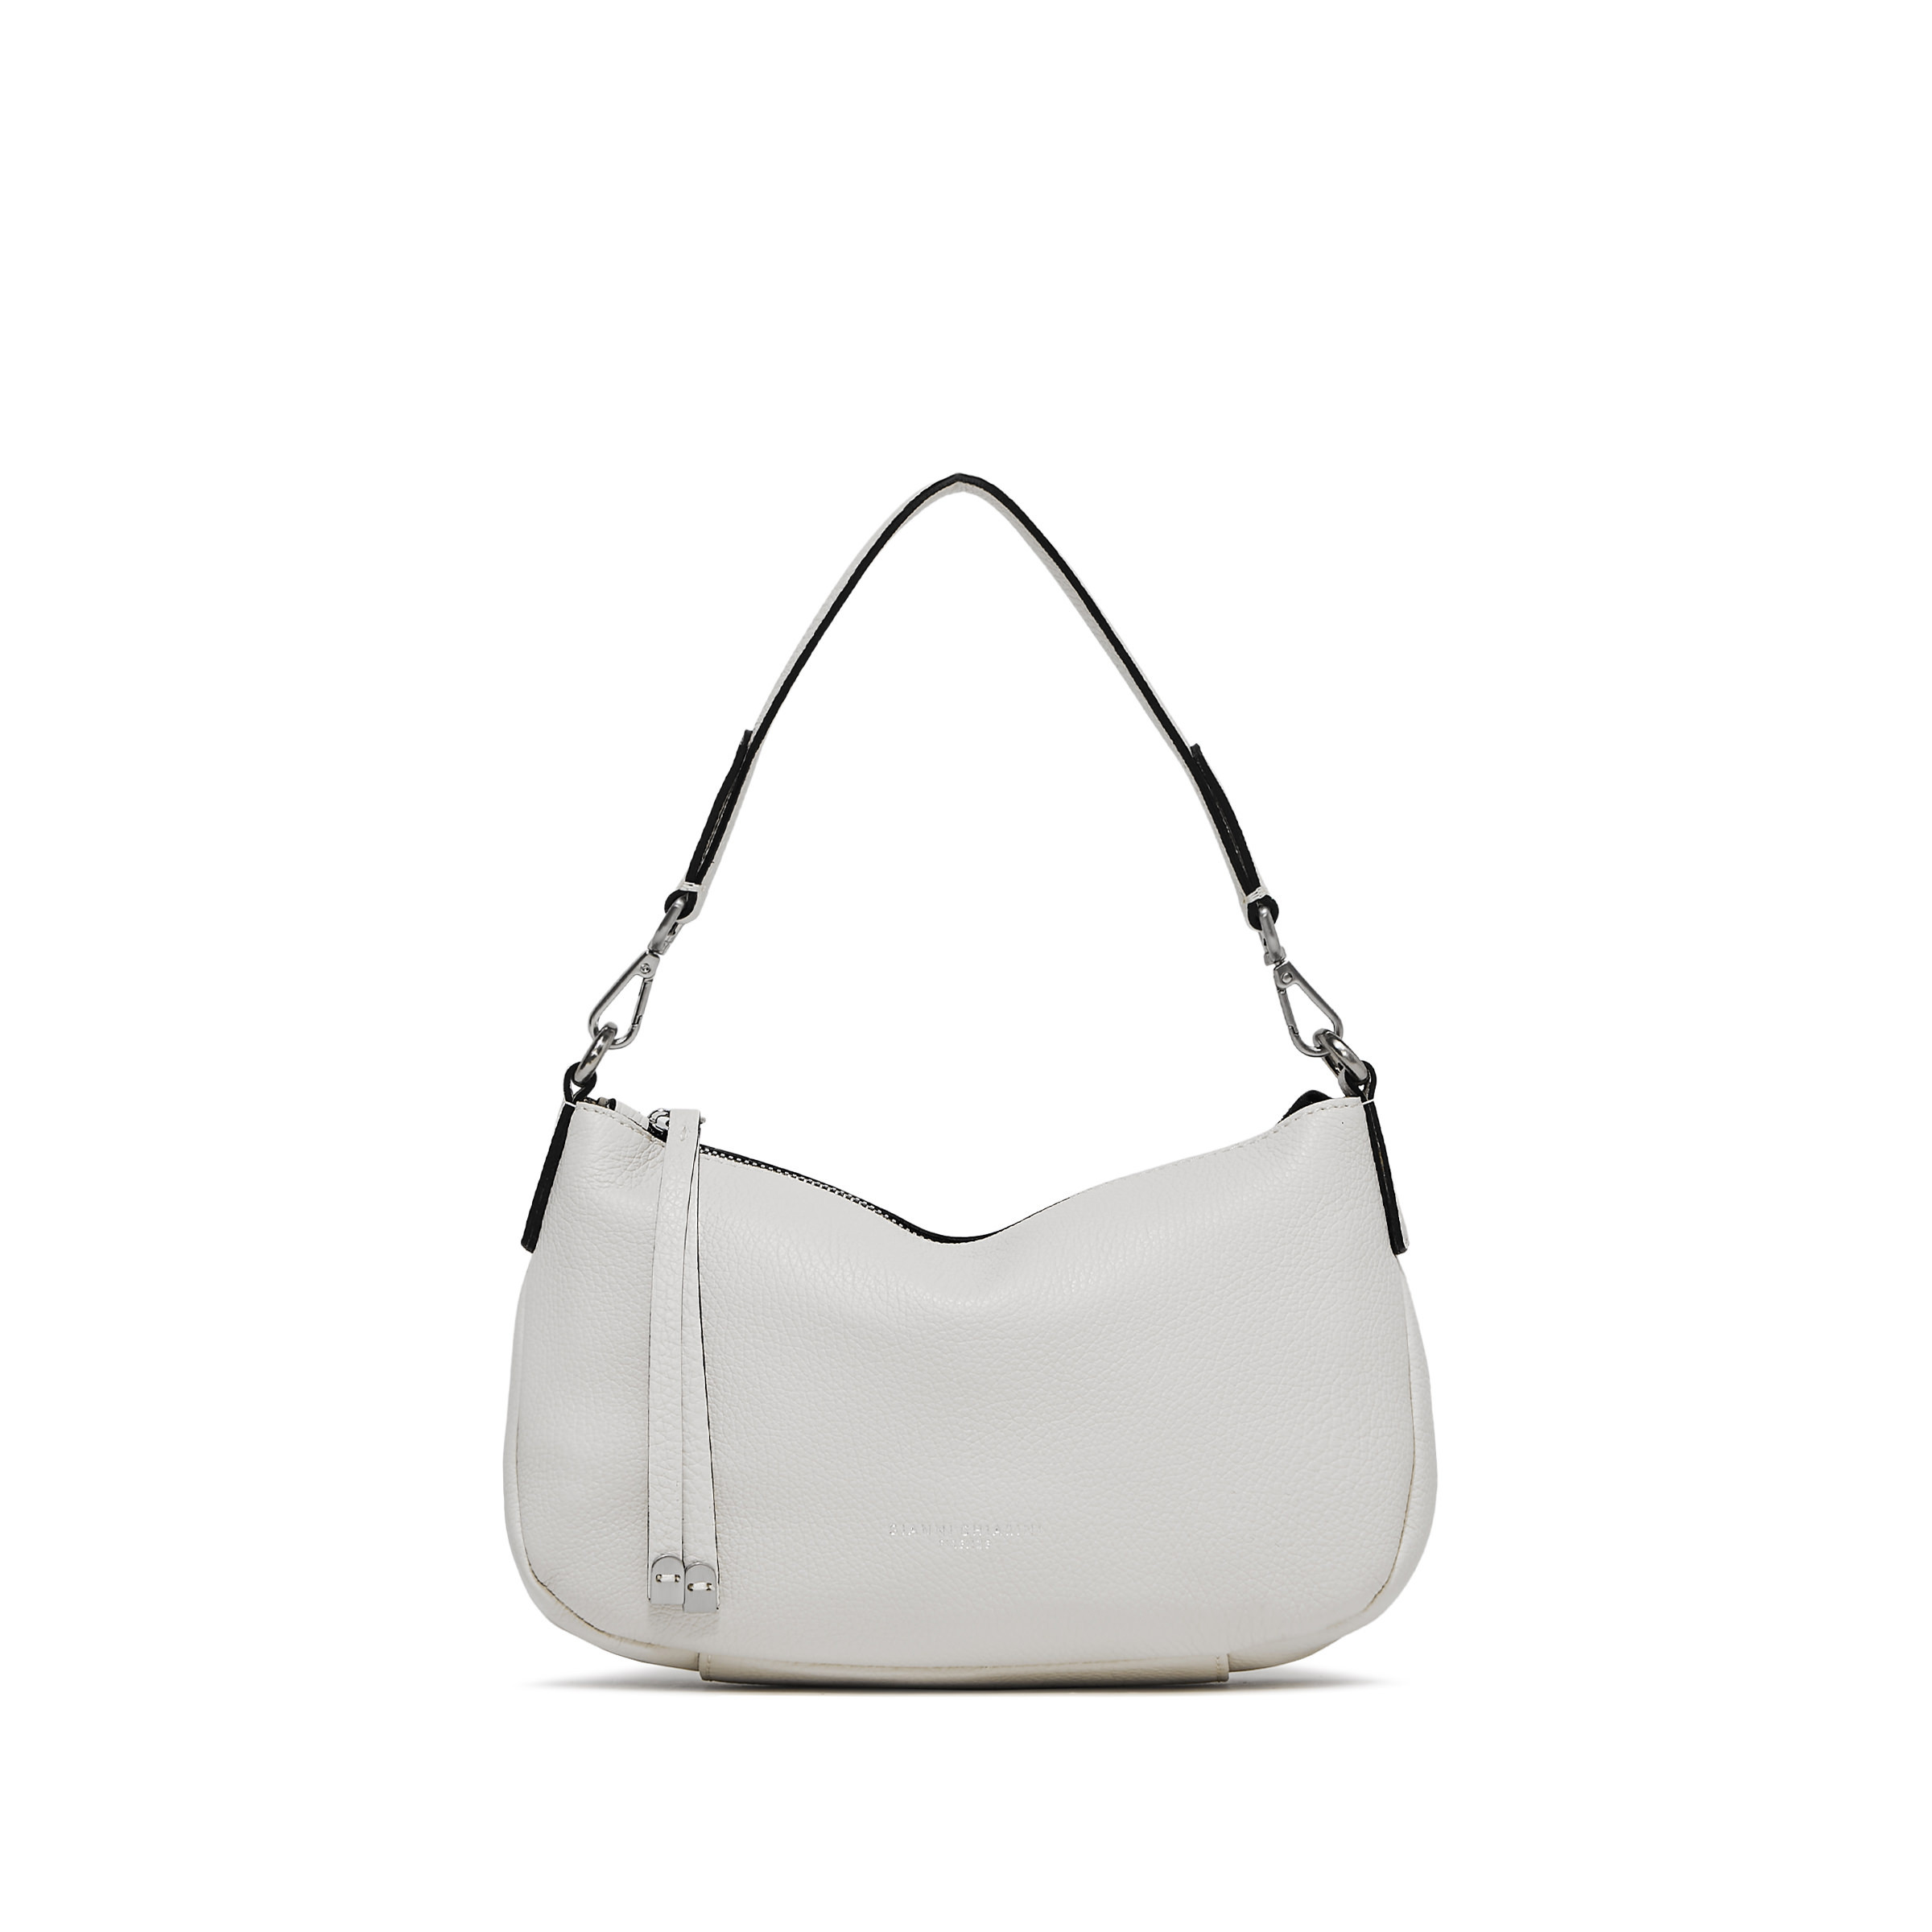 Gianni Chiarini - Nadia Leather bag, White, large image number 0